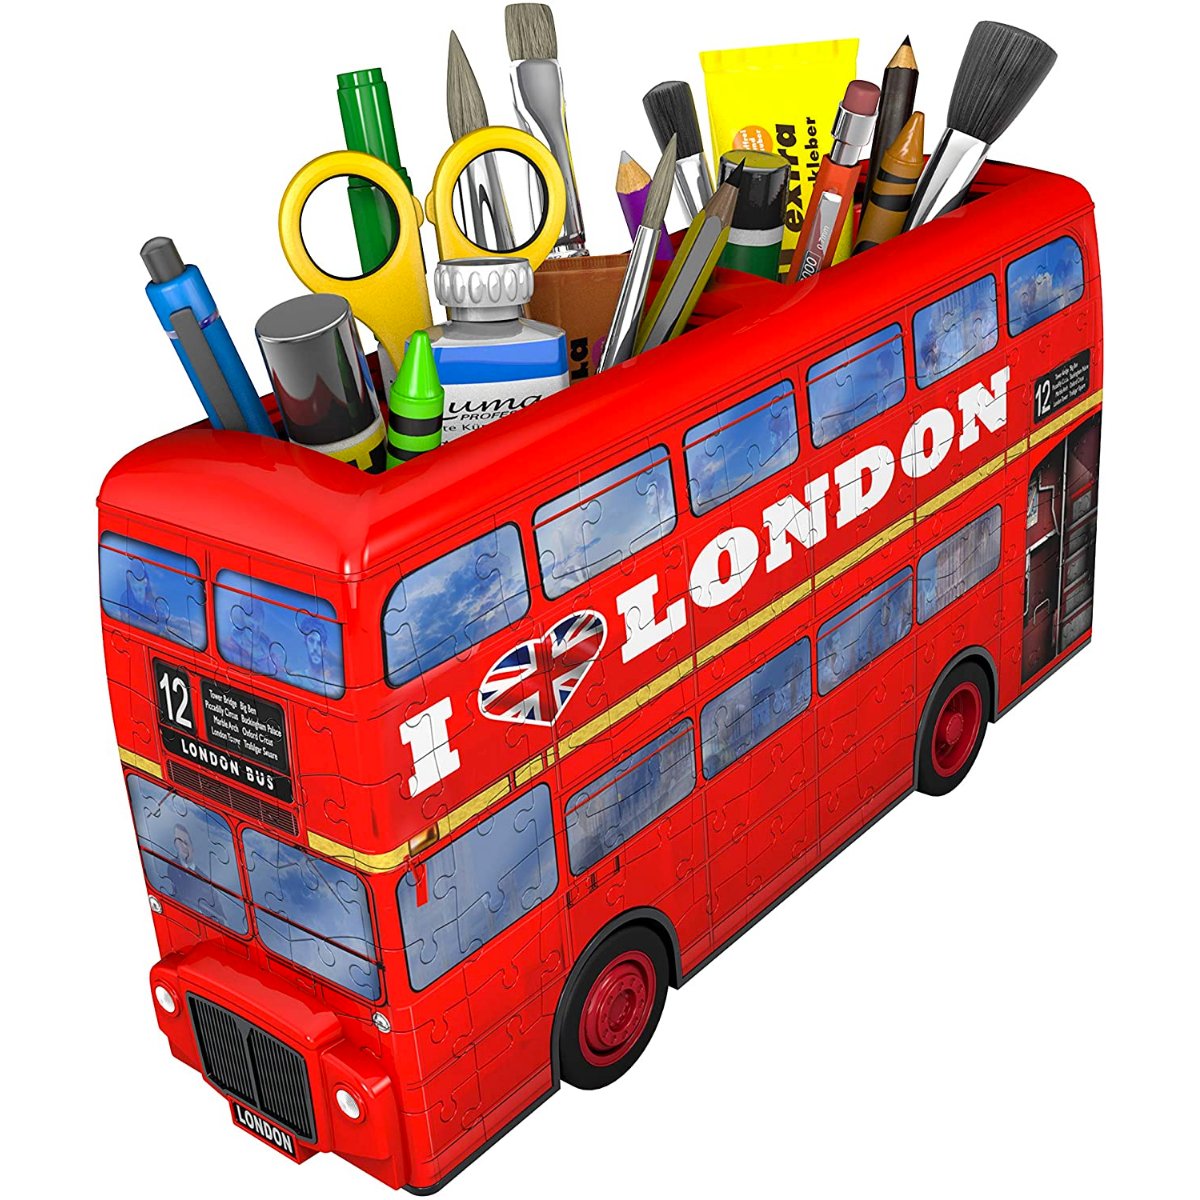 Ravensburger London Bus 3D - 216 Piece Jigsaw Puzzle - Phillips Hobbies